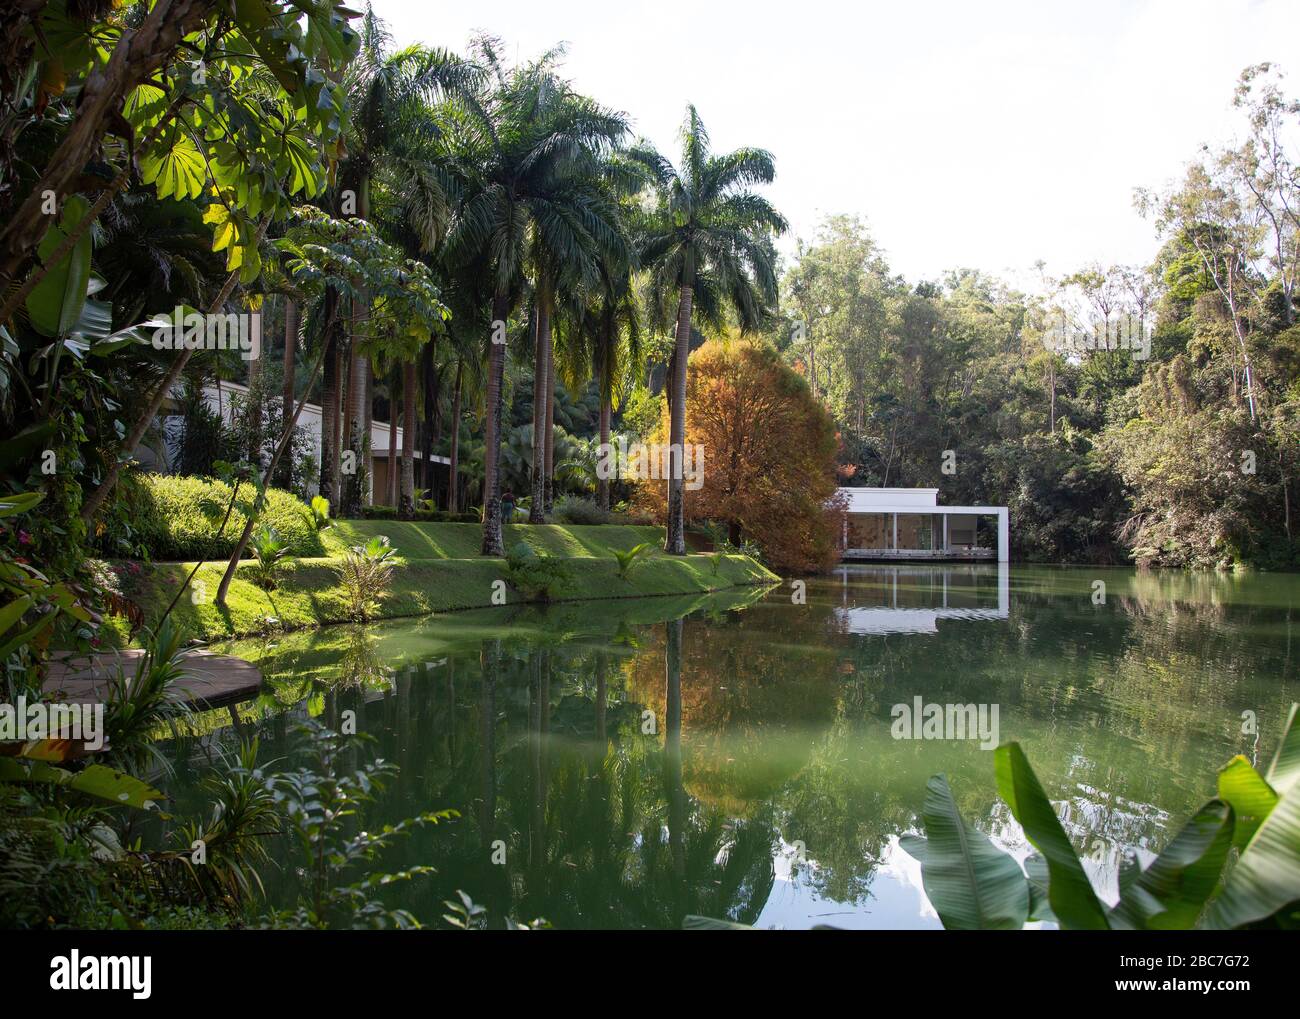 Inhotim l'Institut d'art contemporain et des jardins botaniques de l'État de Minas Gerais, Brésil Banque D'Images